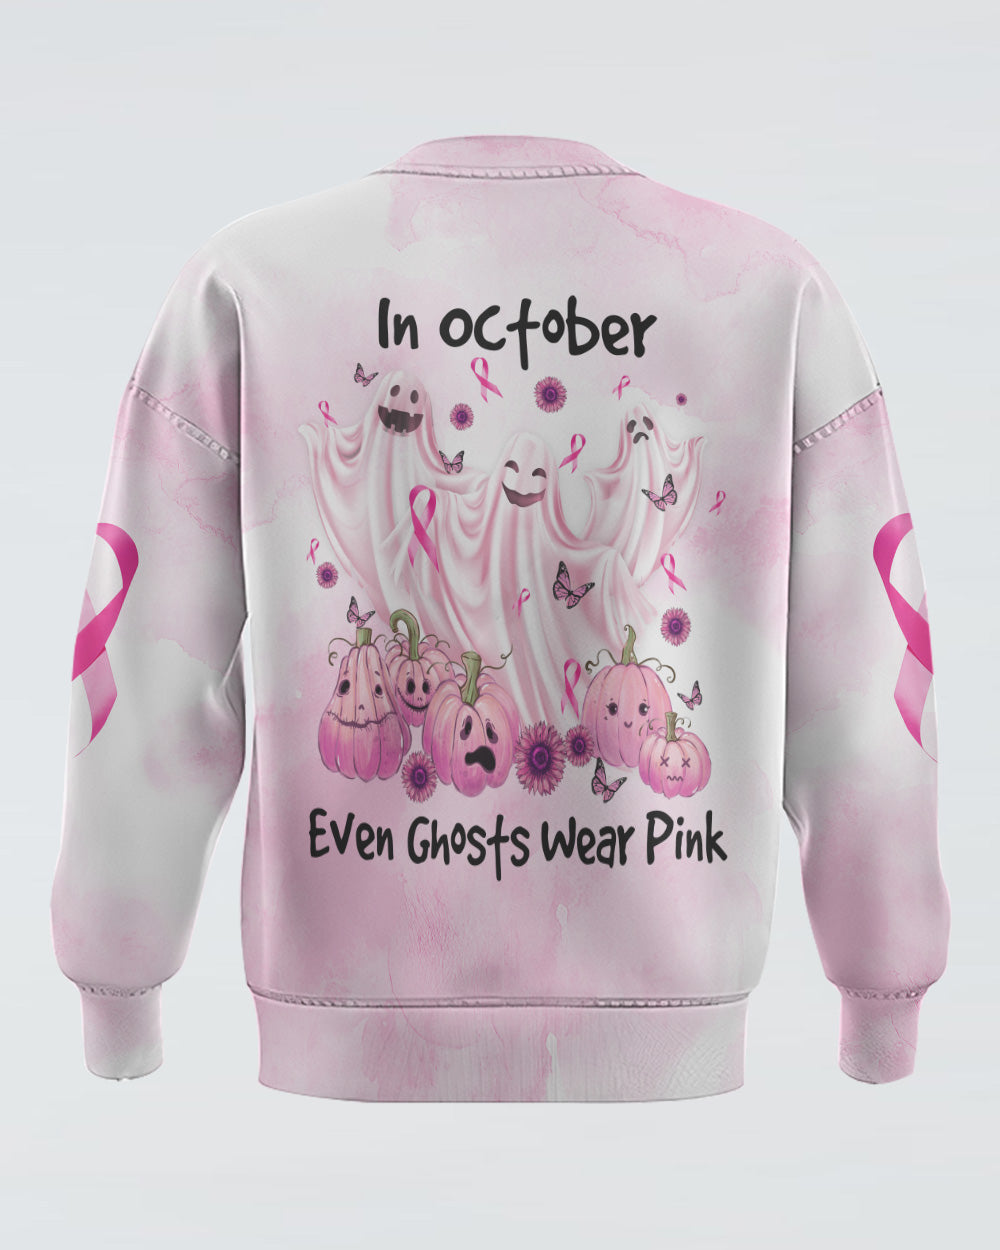 In October Even Ghosts Wear Pink Women's Breast Cancer Awareness Sweatshirt